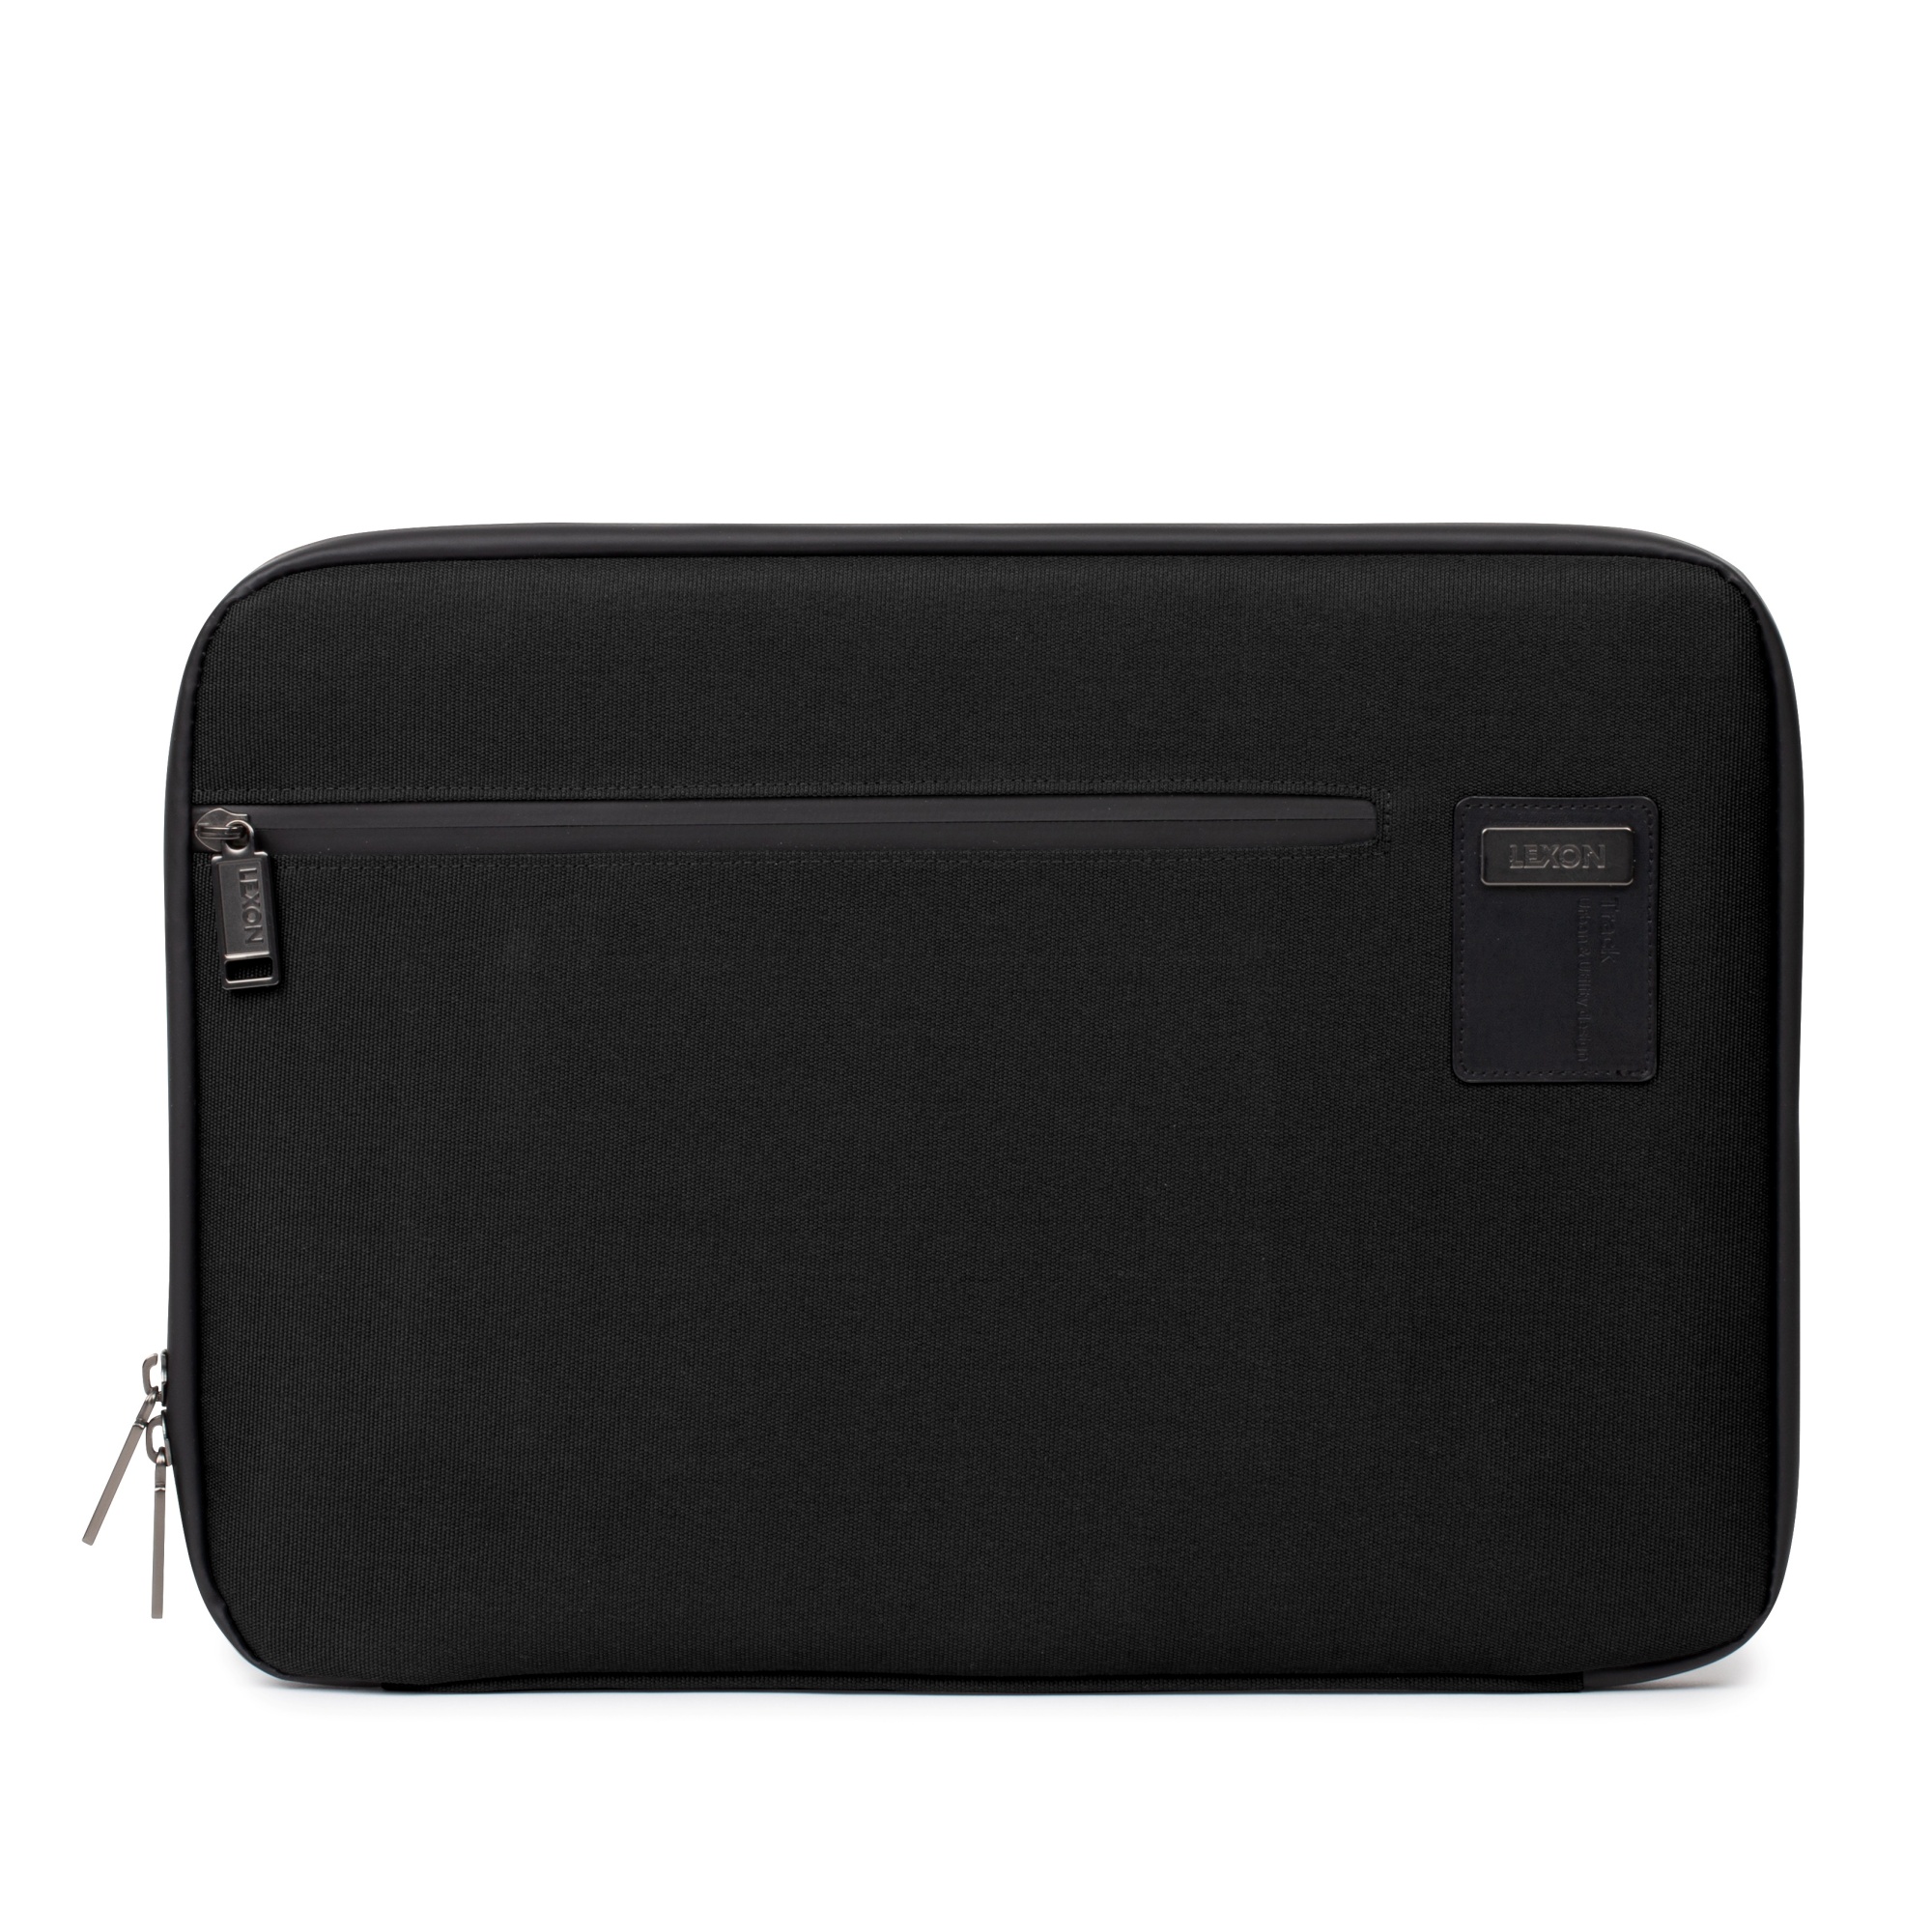 Túi đựng laptop đeo chéo LEXON size 15inch - TRACK+ LAPTOP BRIEF - Hàng chính hãng